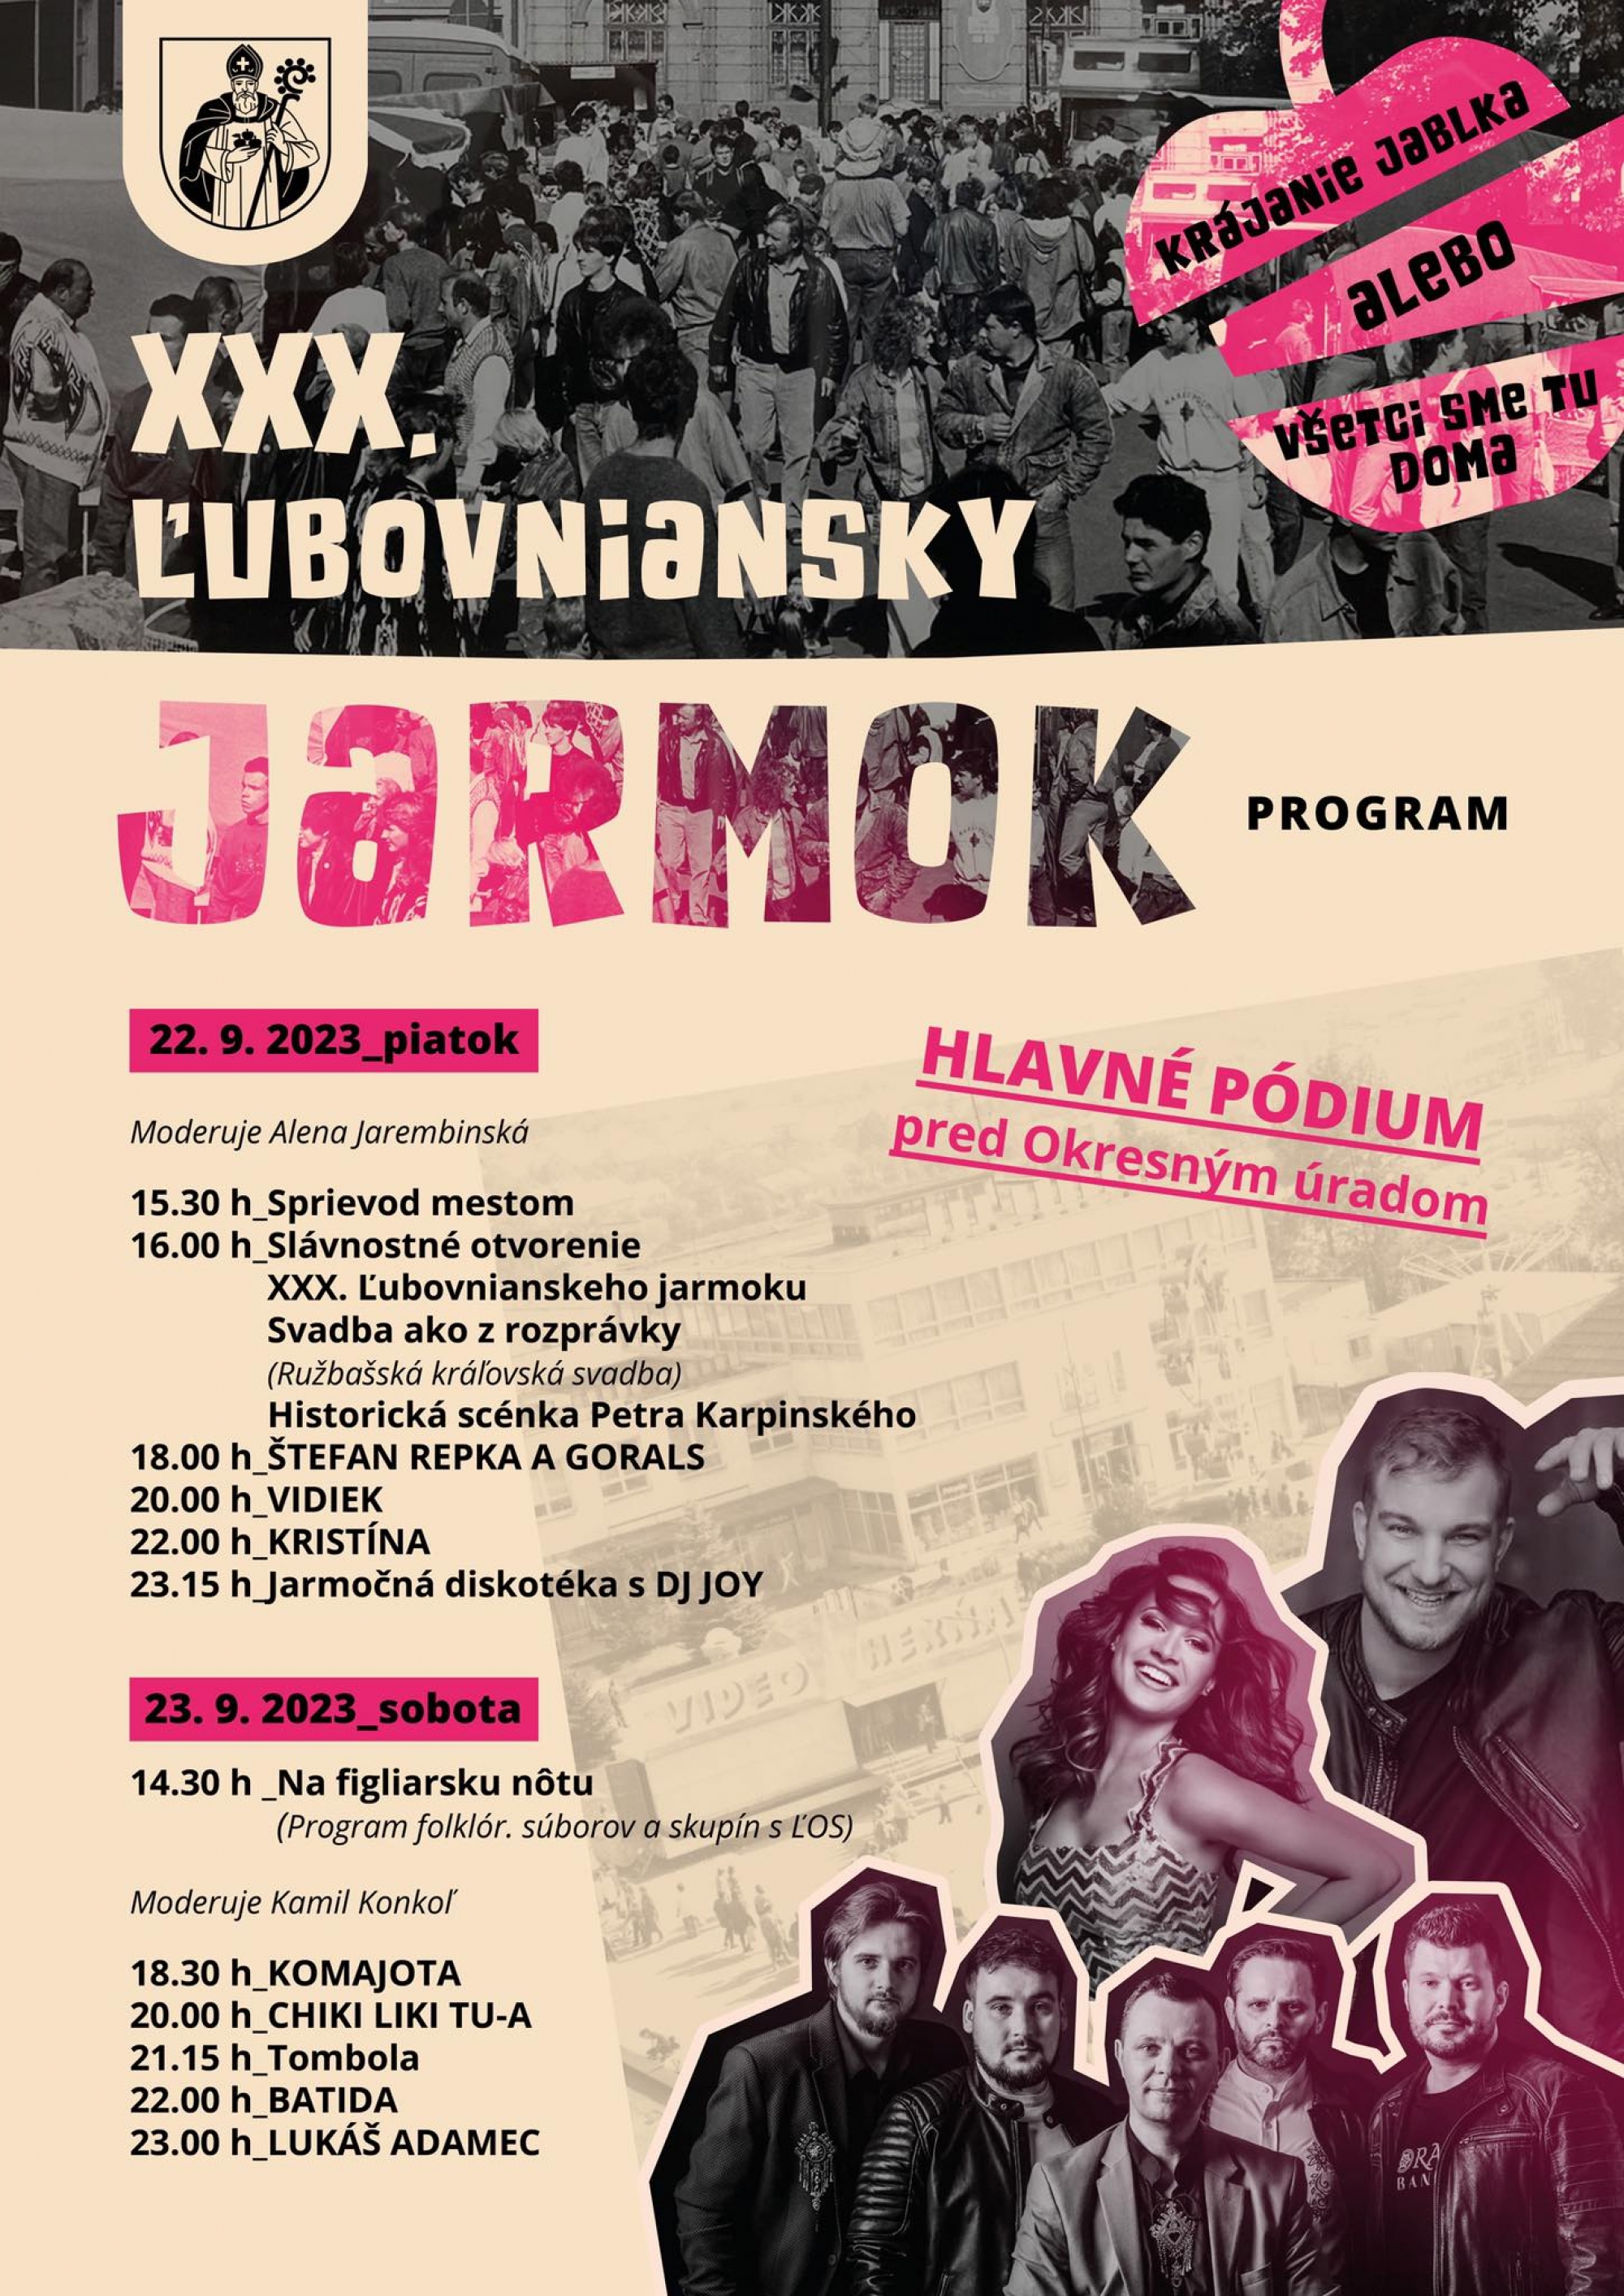 XXX. Ľubovniansky jarmok - Hlavné pódium